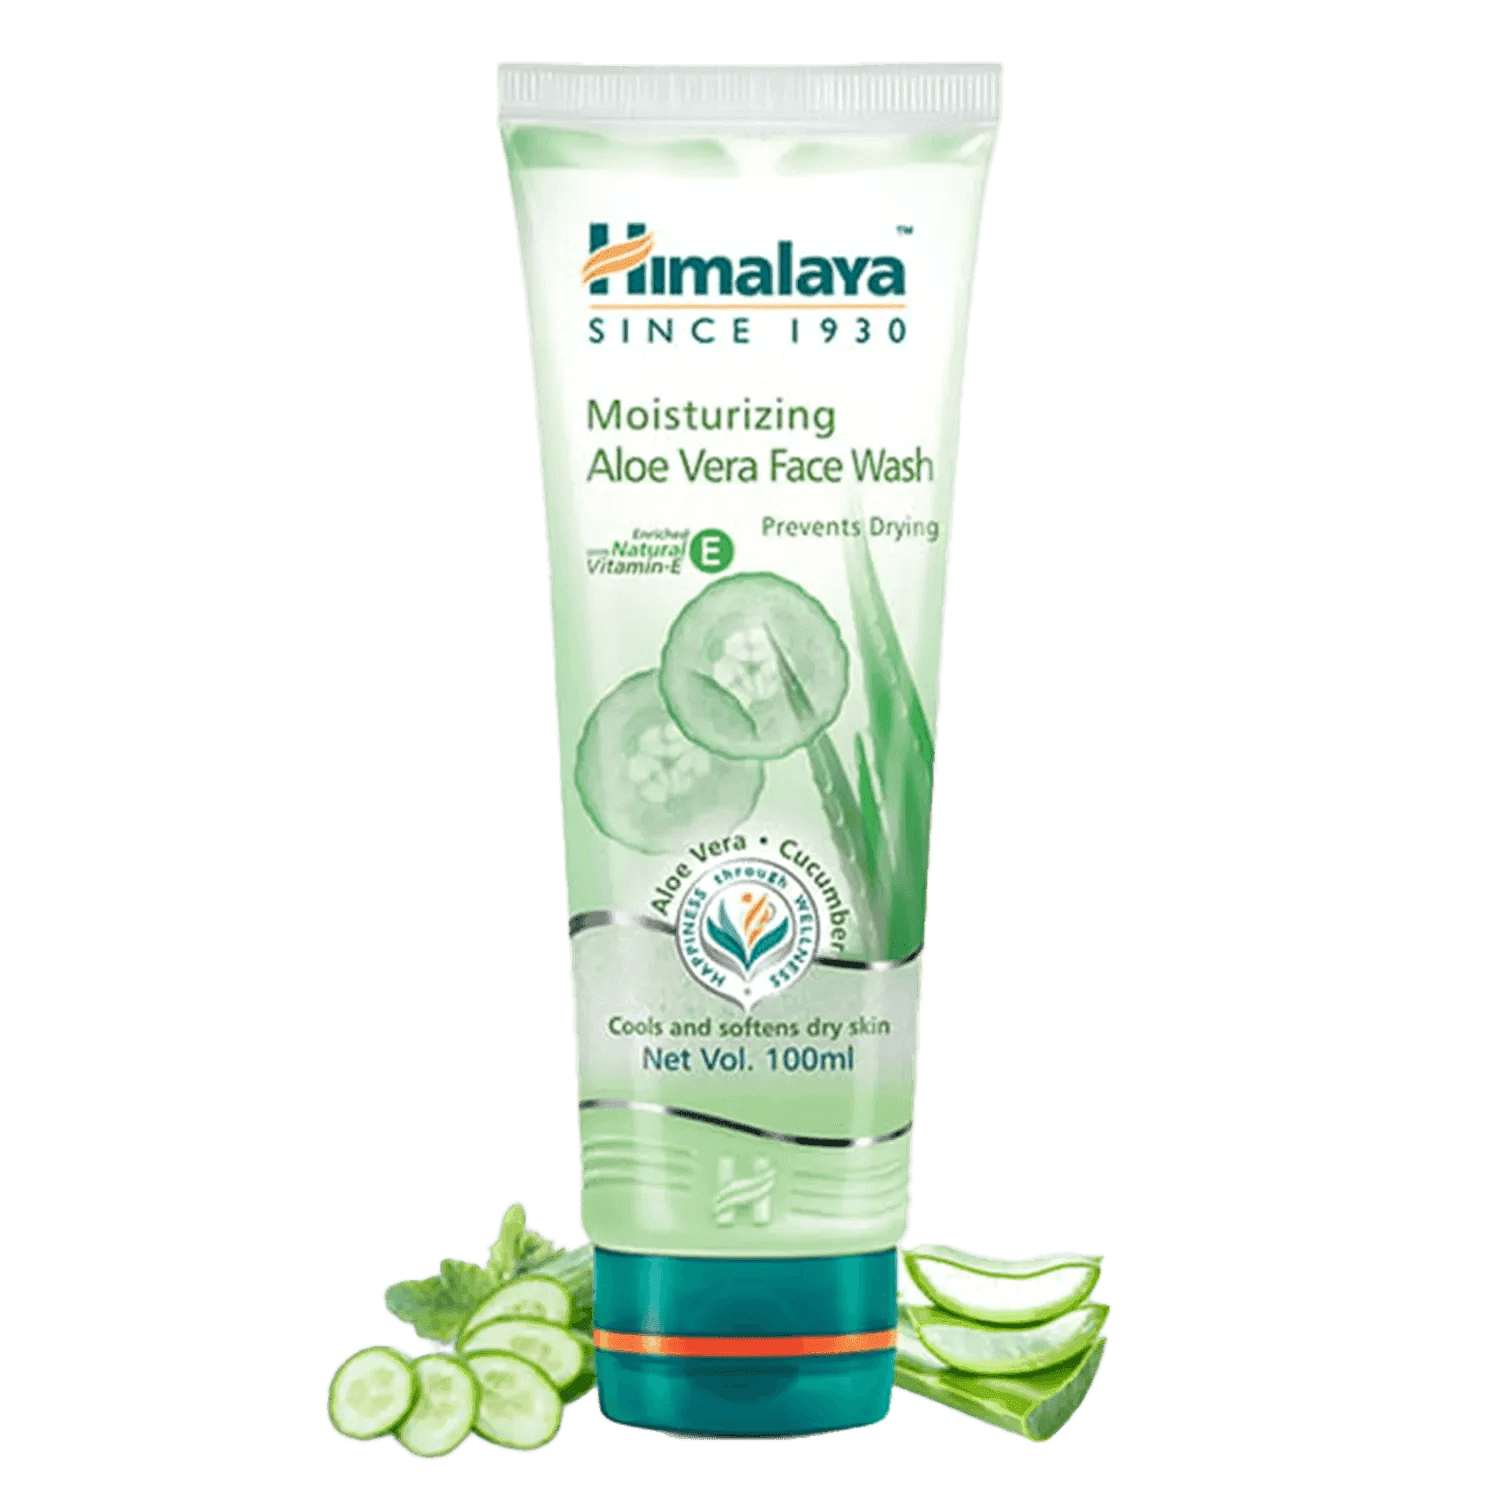 himalaya moisturizing aloe vera face wash (100ml)